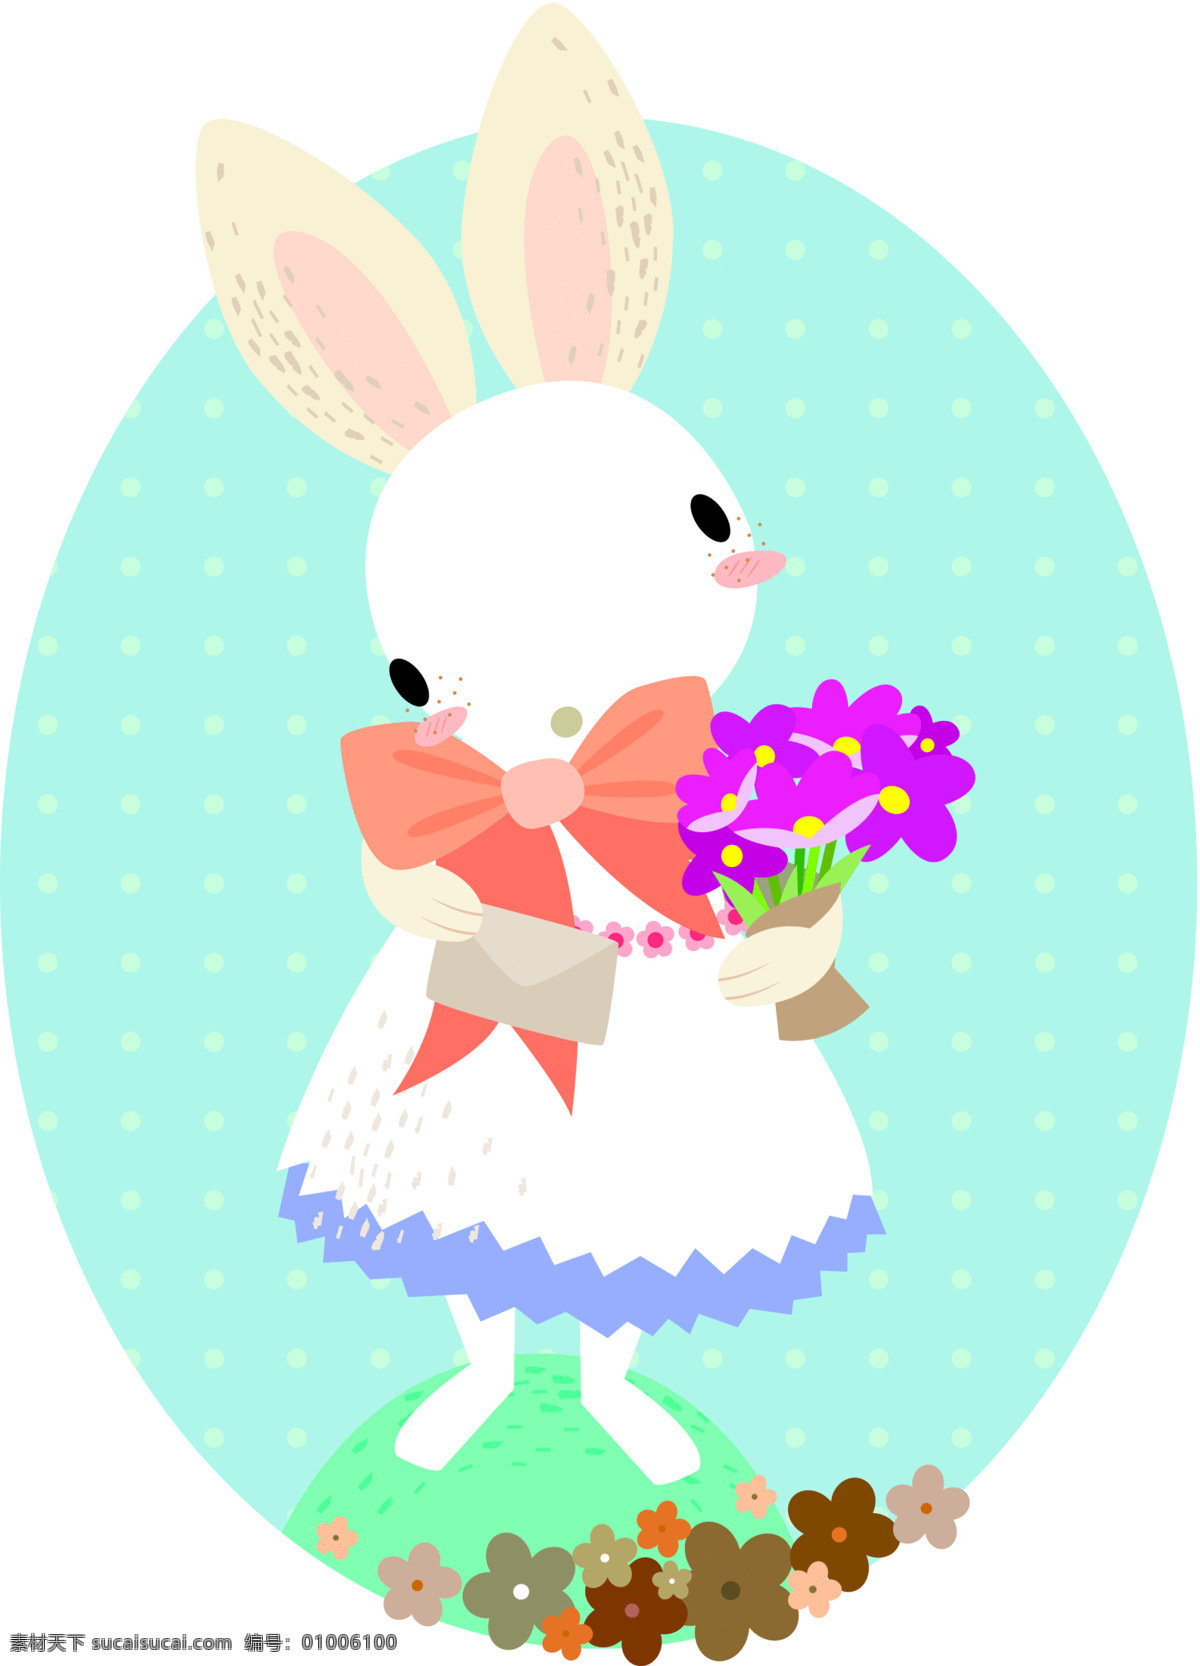 爱情 插画 动漫动画 动物 卡通 卡通兔 可爱 漫画 兔 设计素材 模板下载 小动物 兔子 鲜花 插画集